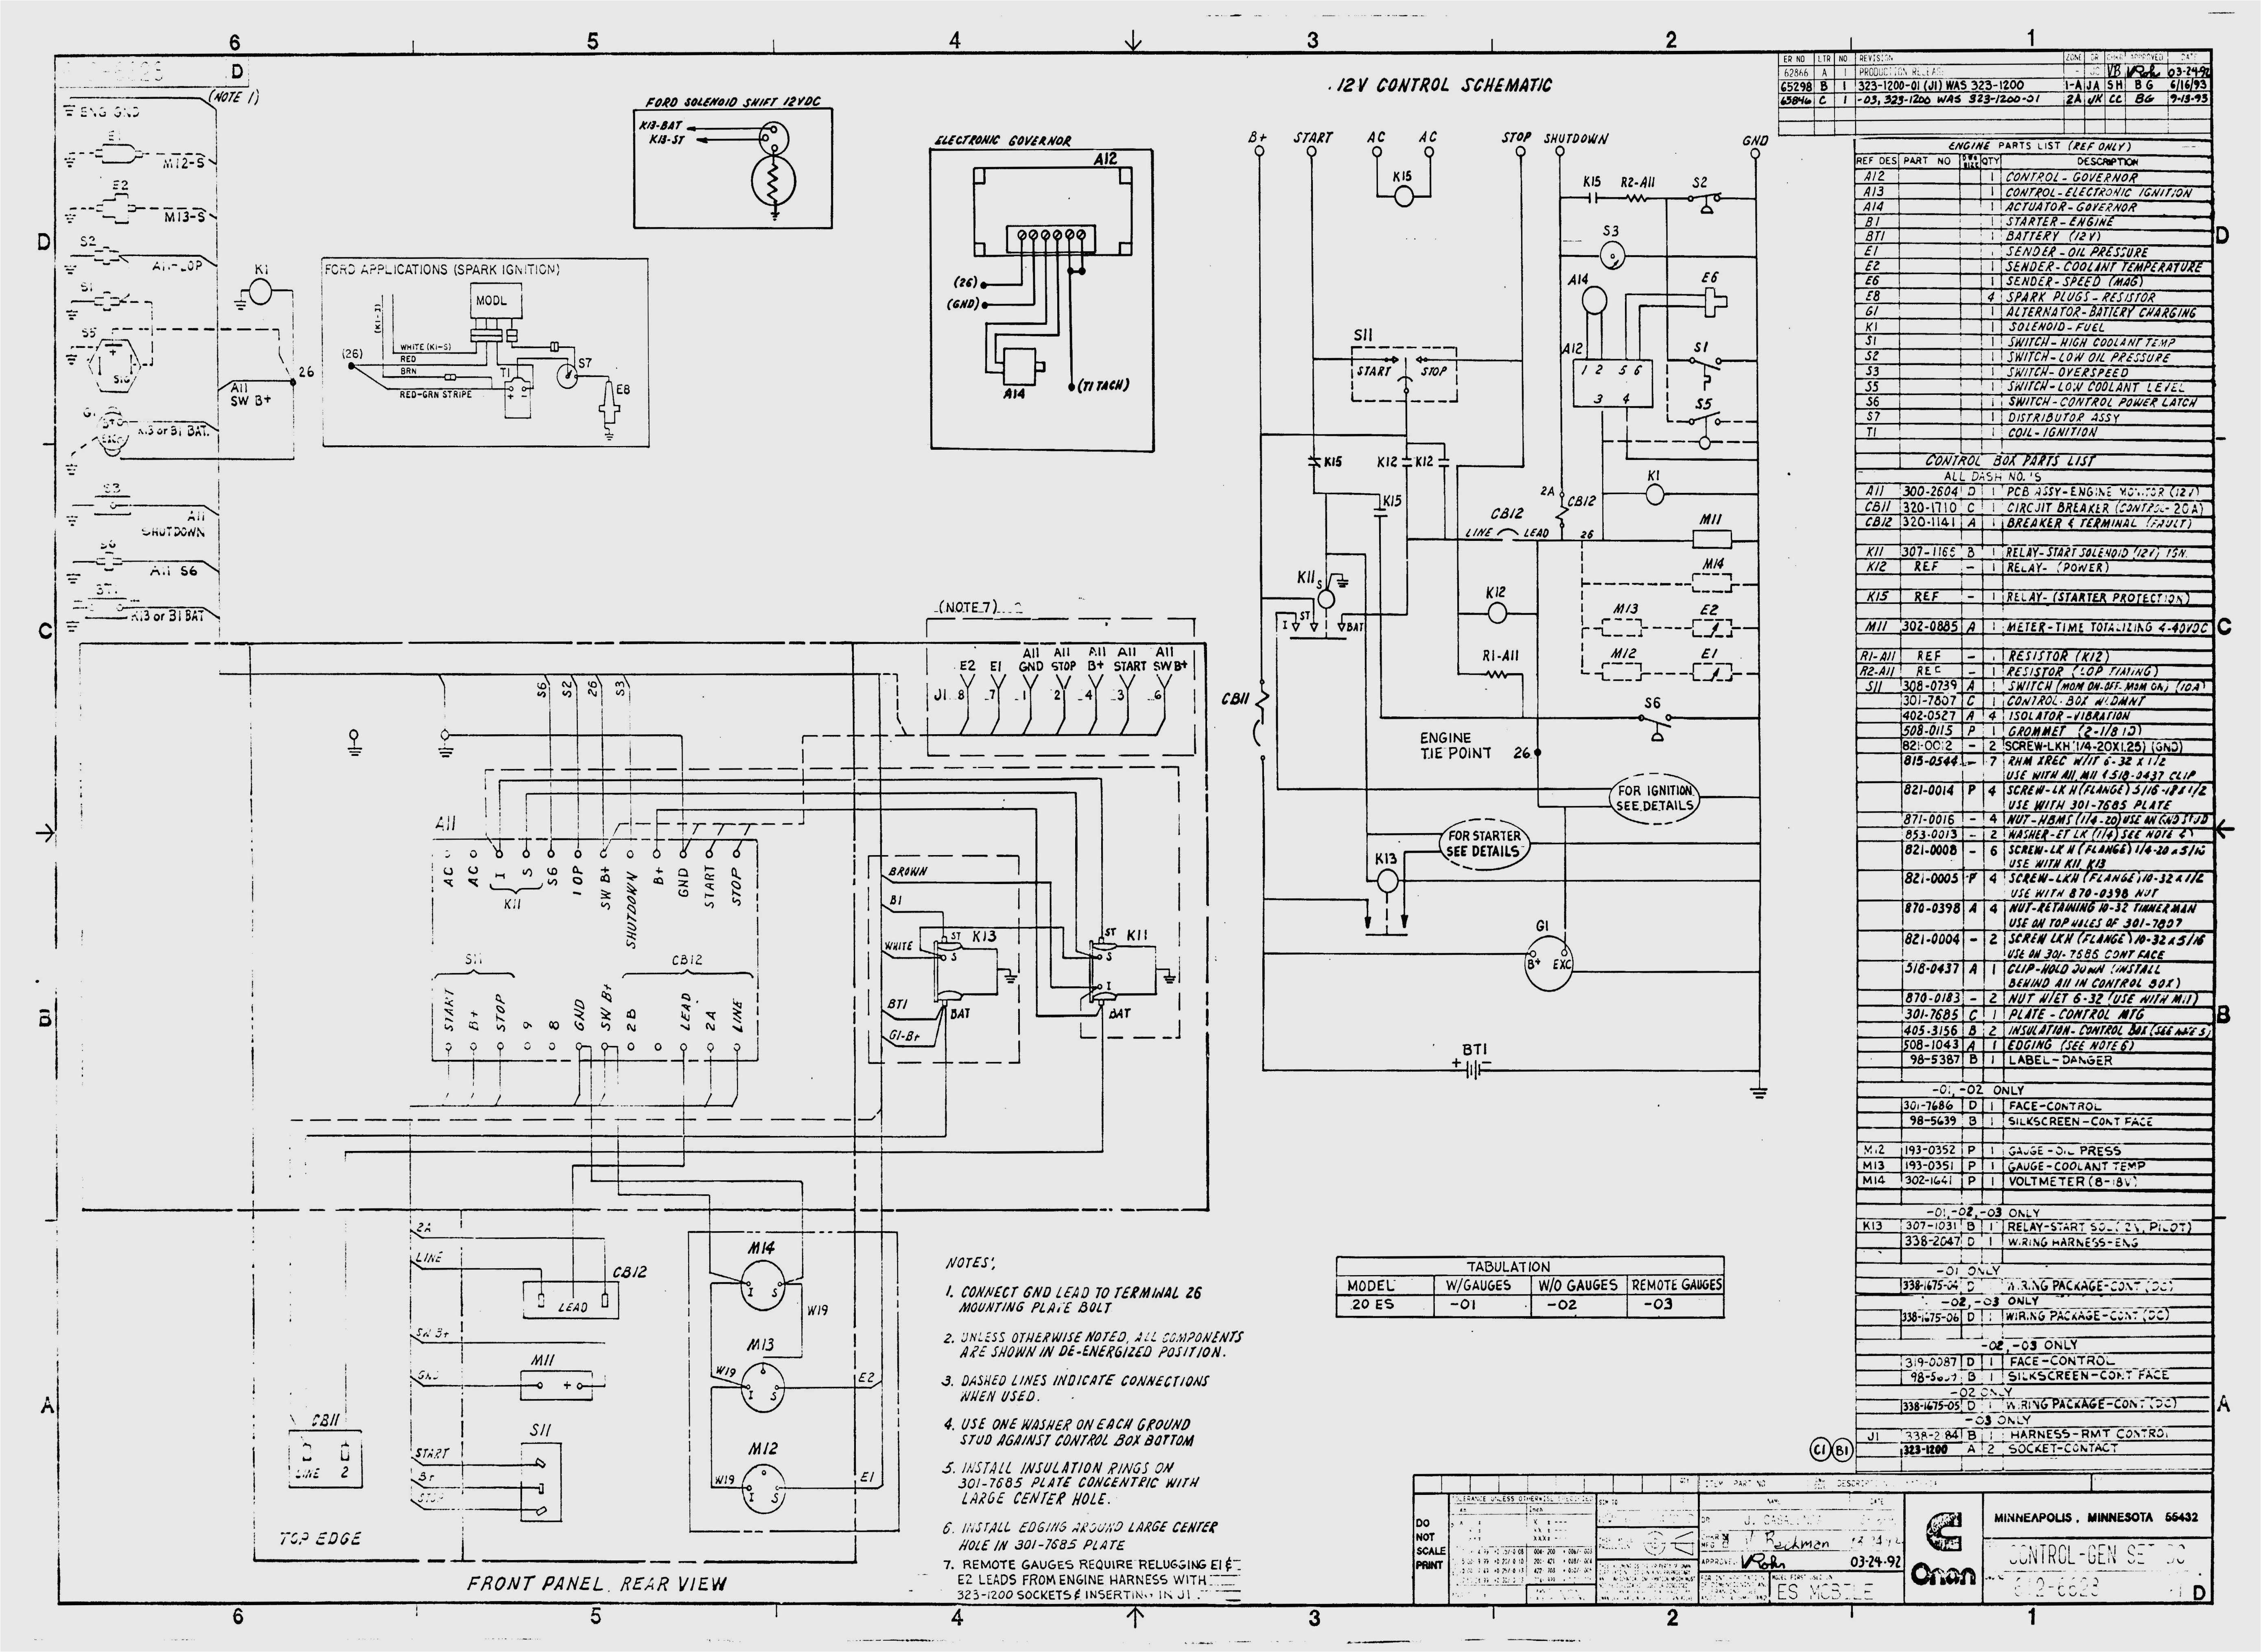 onan 5500 generator wiring diagram genset wiring diagram free download oasis dl